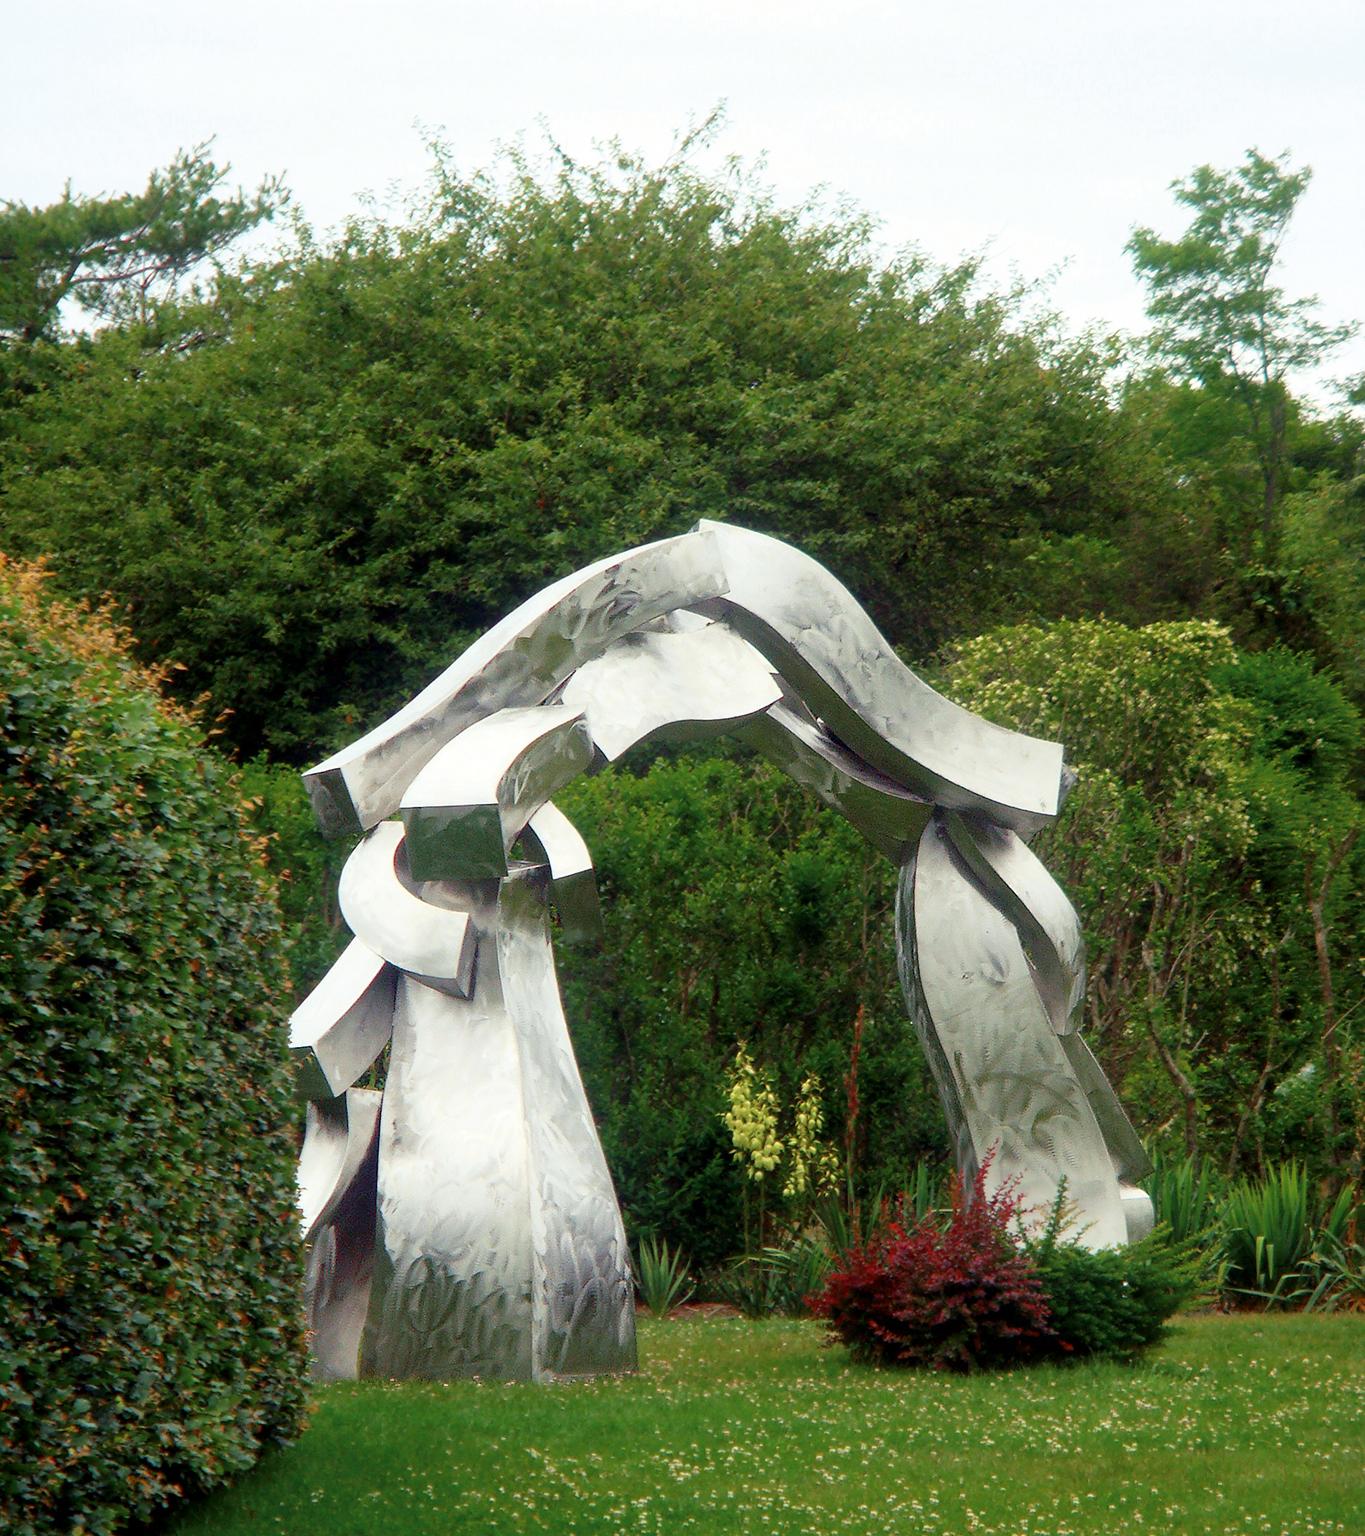 Hans Van de Bovenkamp Abstract Sculpture - "Sagg Portal #9" Abstract, Steel Metal Sculpture, Large-Scale, Outdoors